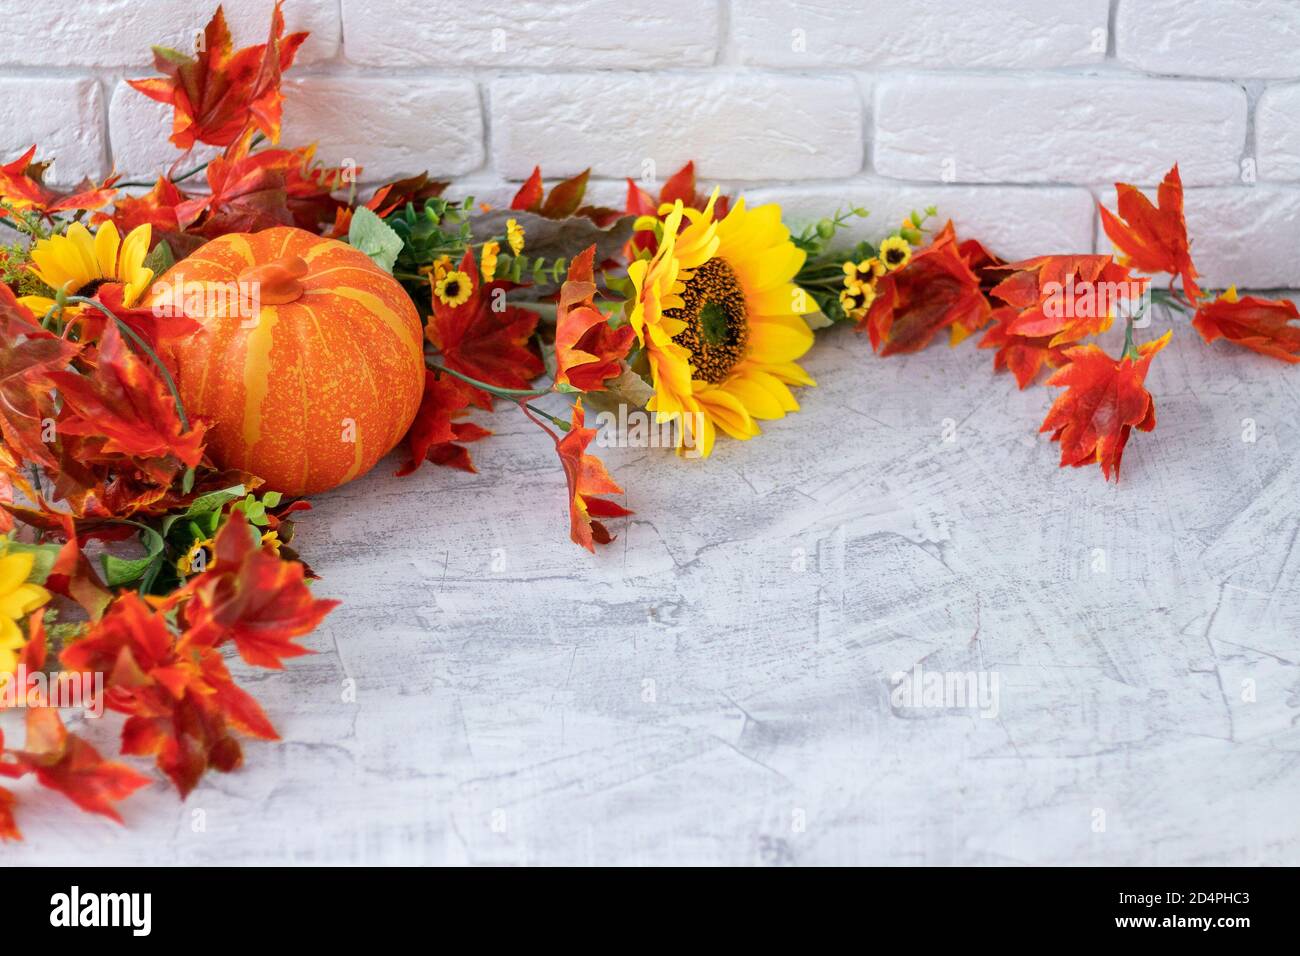 12 x feuilles d'automne les découpes Thanksgiving récolte Mur Fenêtre Décoration de Table 